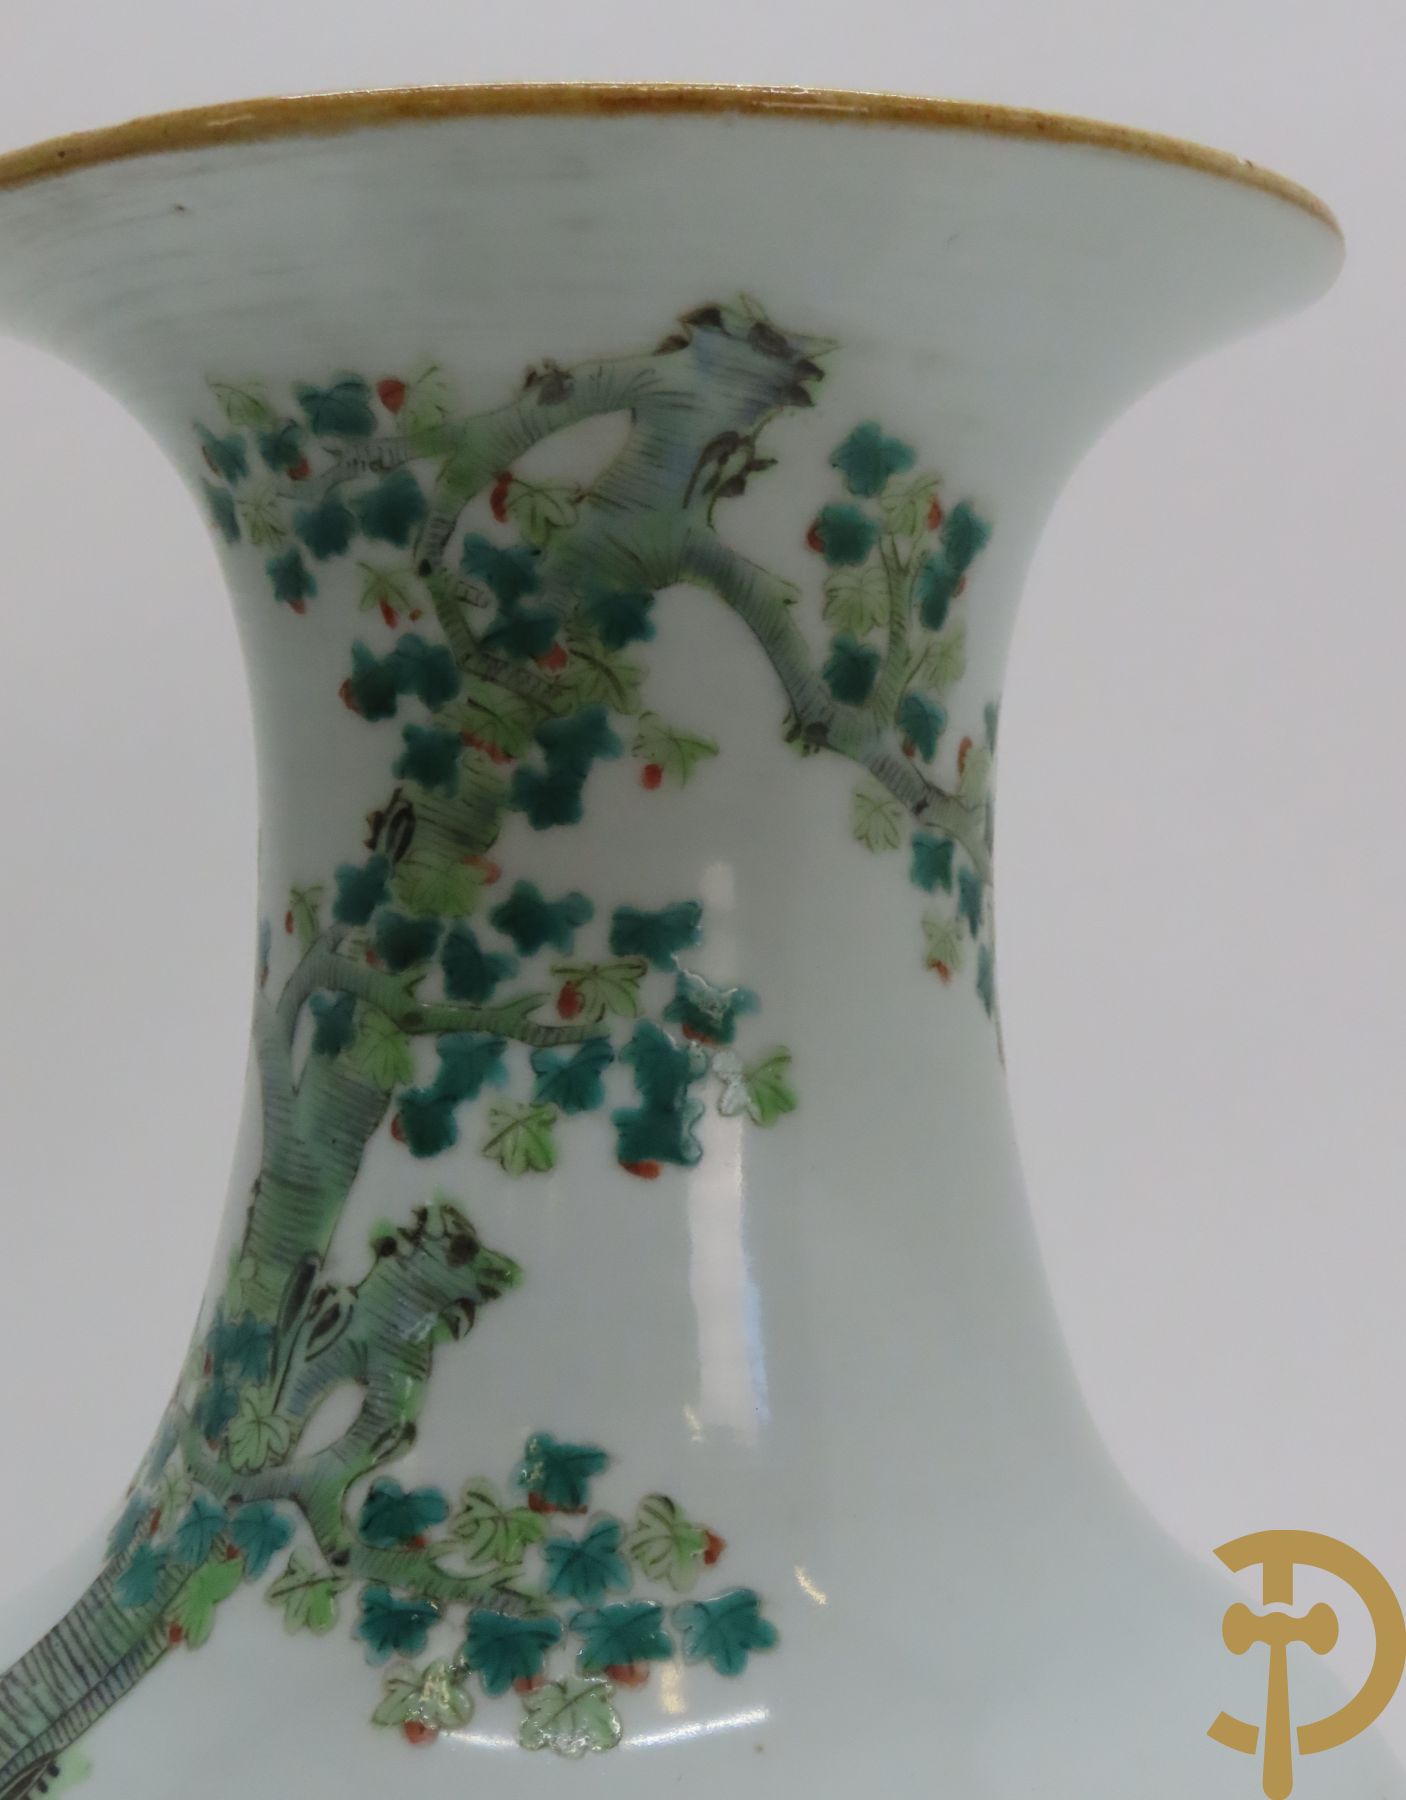 Chinese porseleinen vaas met geanimeerd familiedecor in landschap